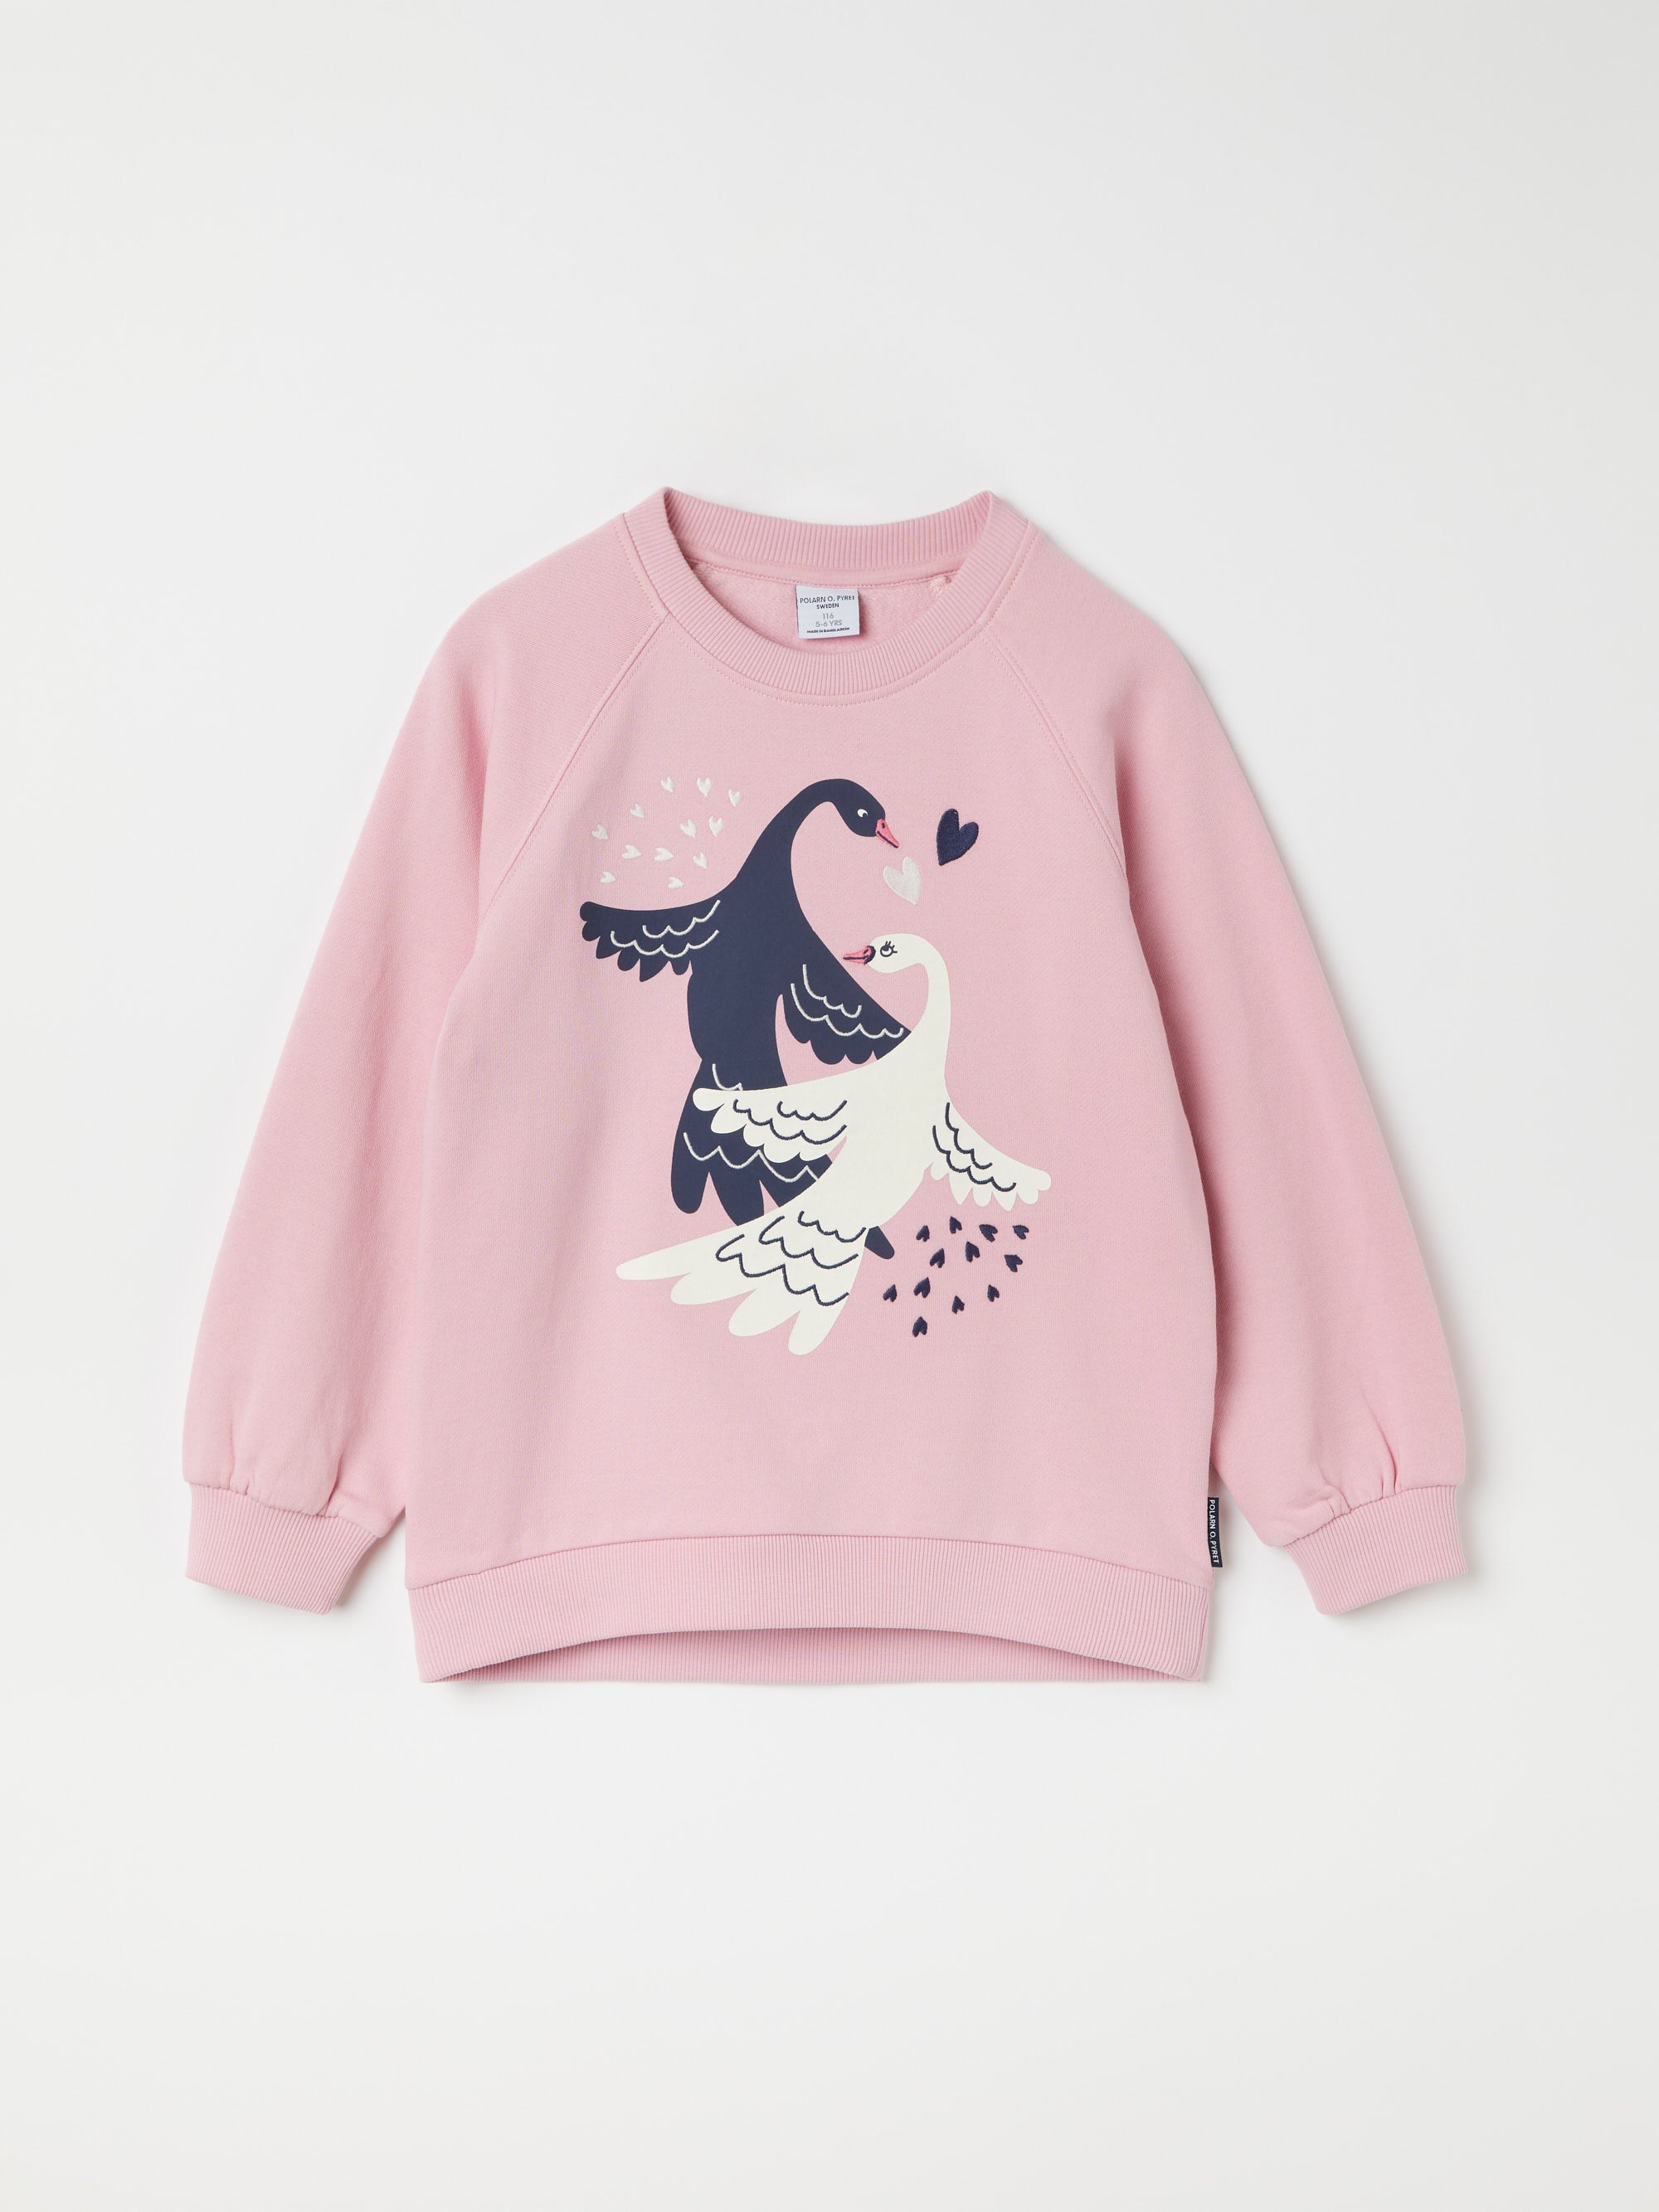 Swan Print Kids Sweatshirt